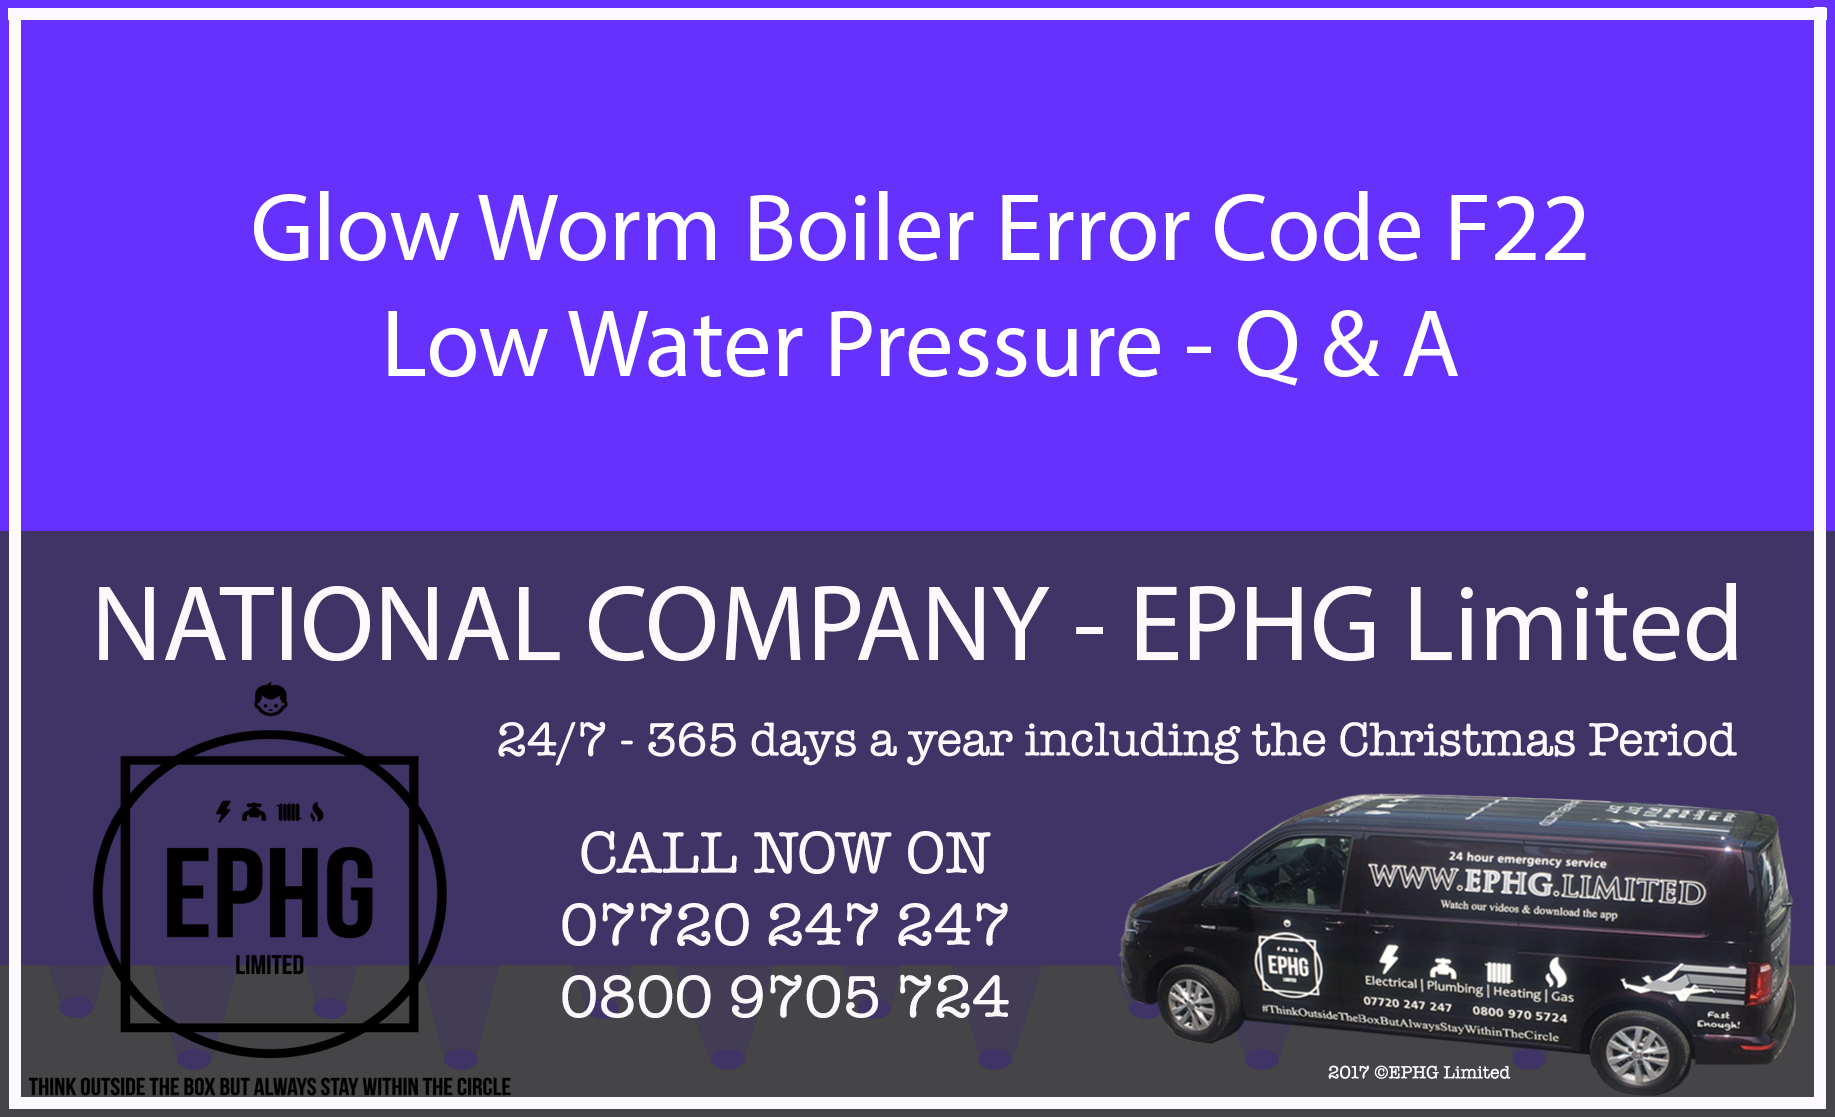 Glow-Worm boiler error code F.22